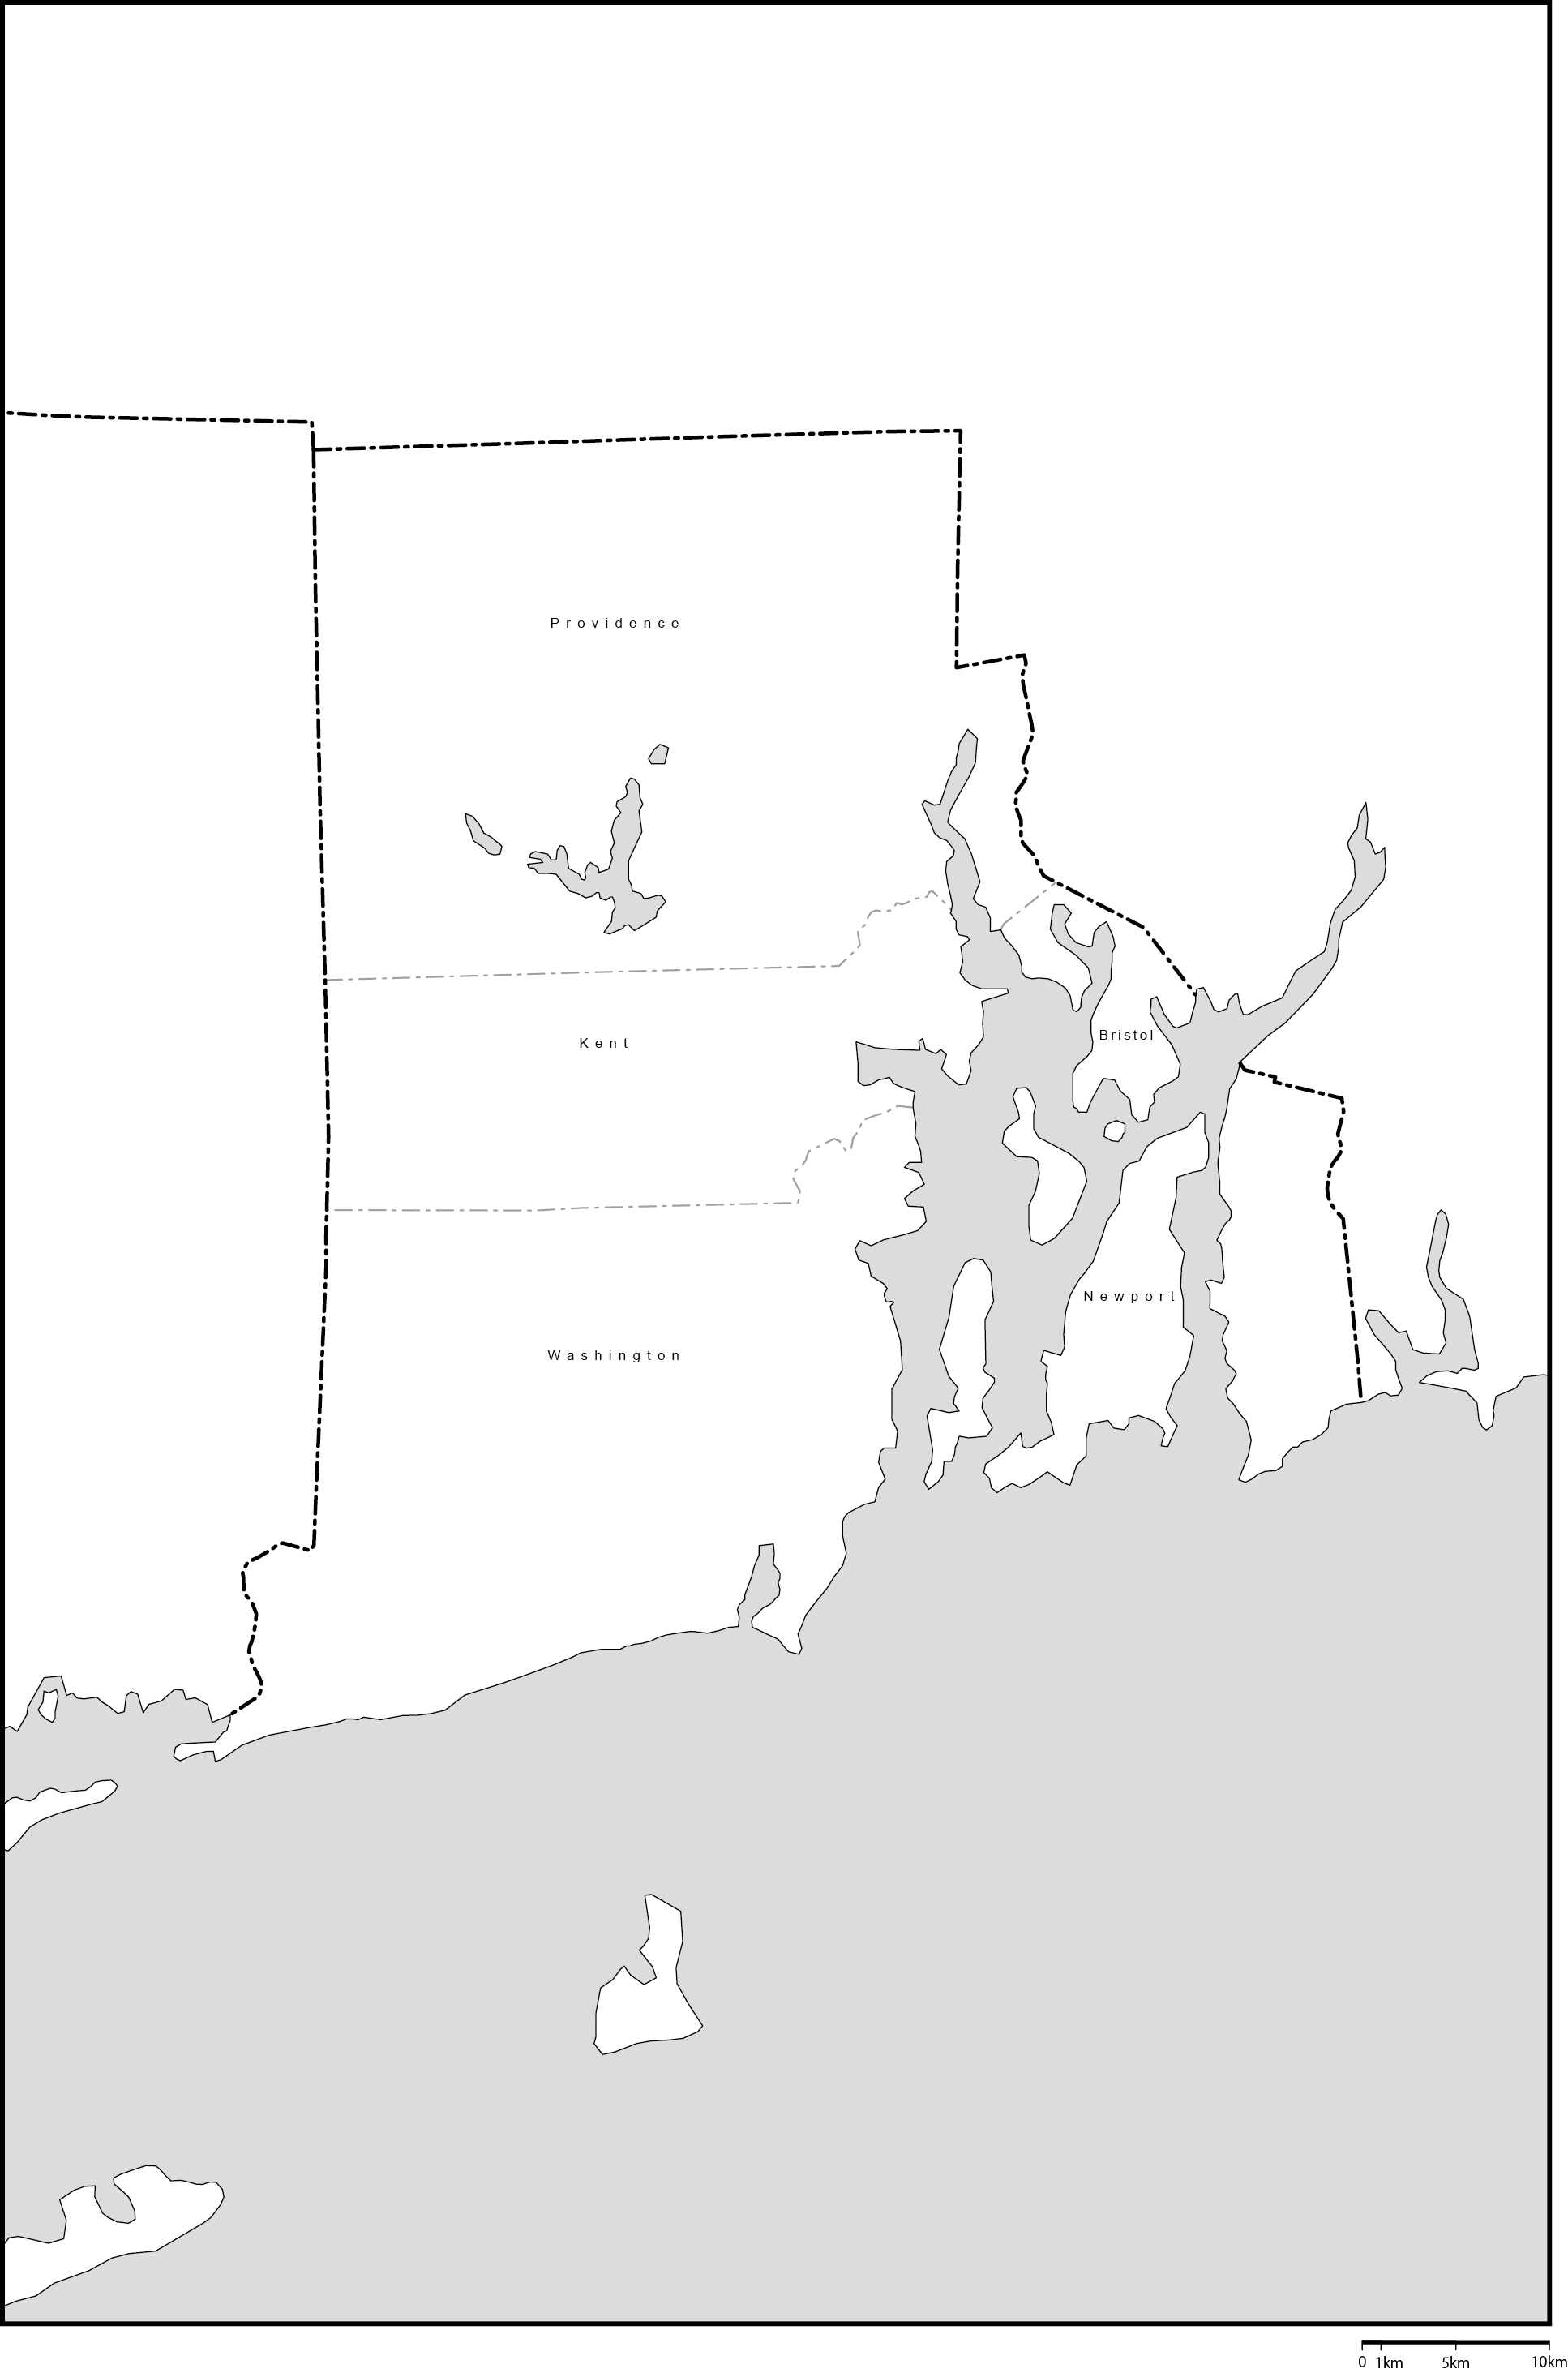 ロードアイランド州郡分け白地図郡名あり(英語)フリーデータの画像